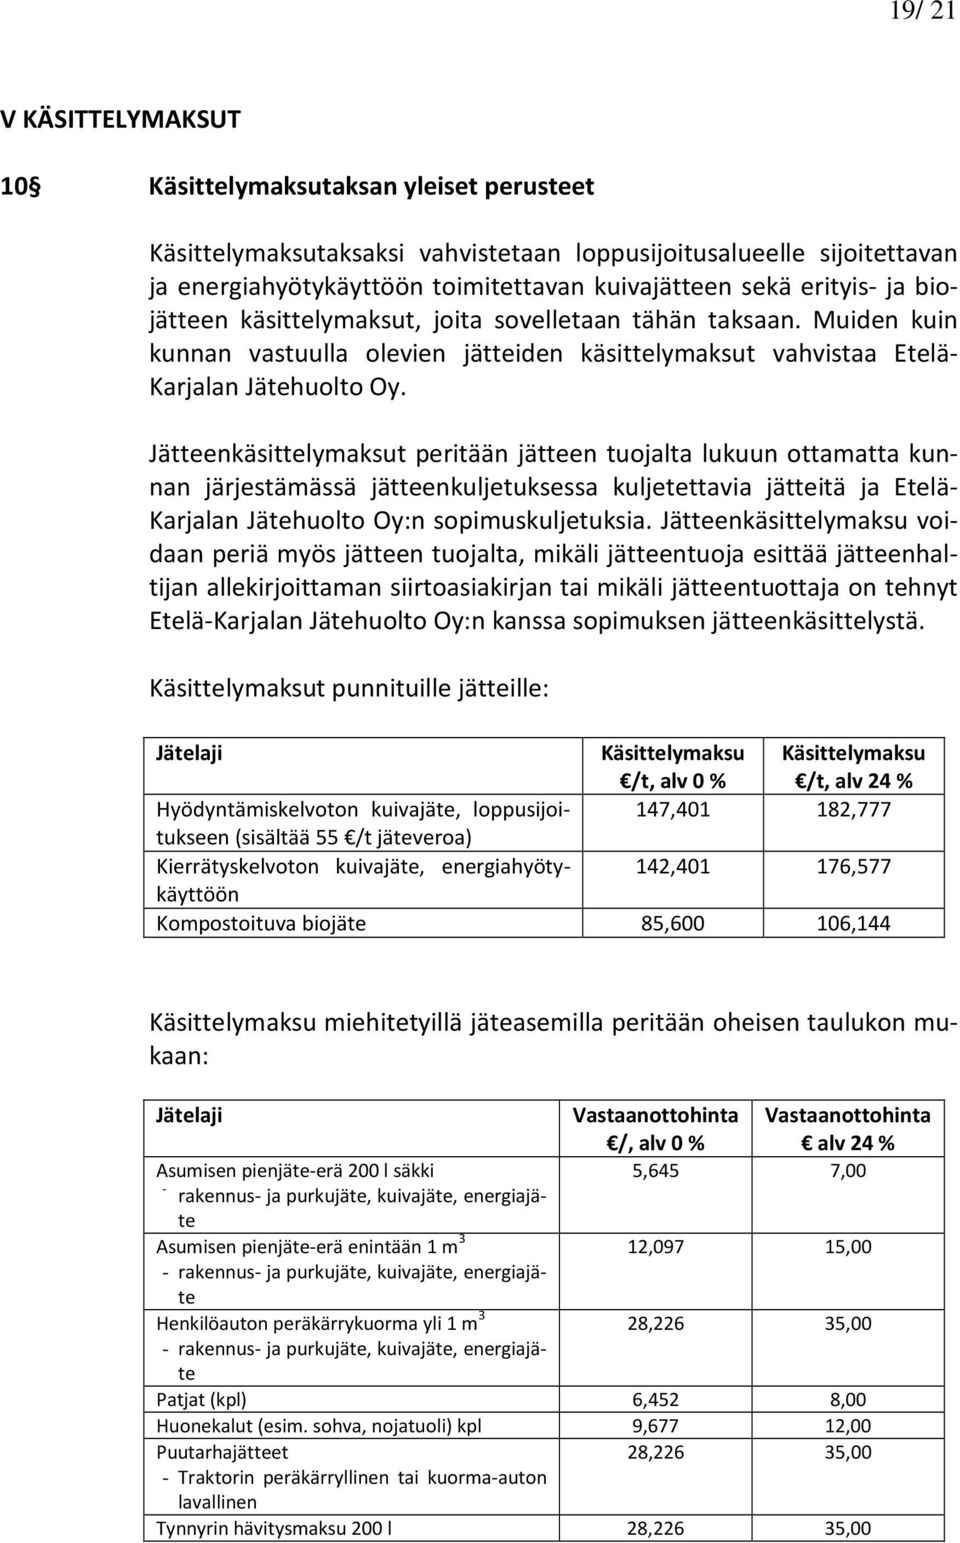 Jätteenkäsittelymaksut peritään jätteen tuojalta lukuun ottamatta kunnan järjestämässä jätteenkuljetuksessa kuljetettavia jätteitä ja Etelä- Karjalan Jätehuolto Oy:n sopimuskuljetuksia.